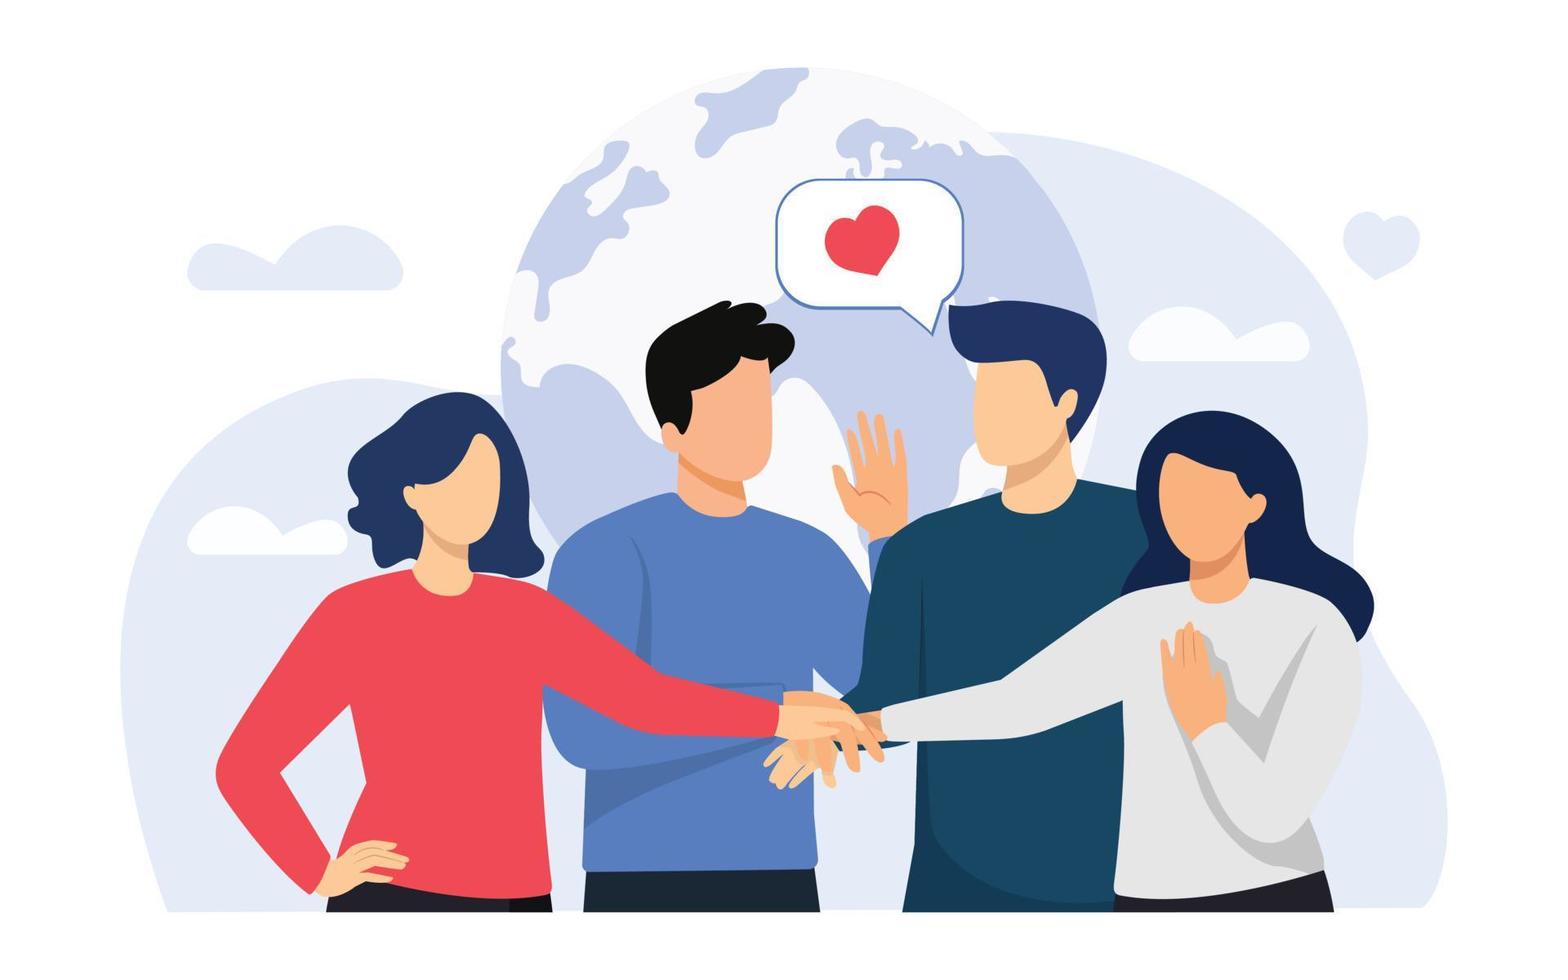 gemenskap, solidaritet av människors, mellan raser vänskap, lagarbete, volontär- begrepp. hand dragen grupp av vänlig volontärer sätta händer tillsammans. vektor illustration.